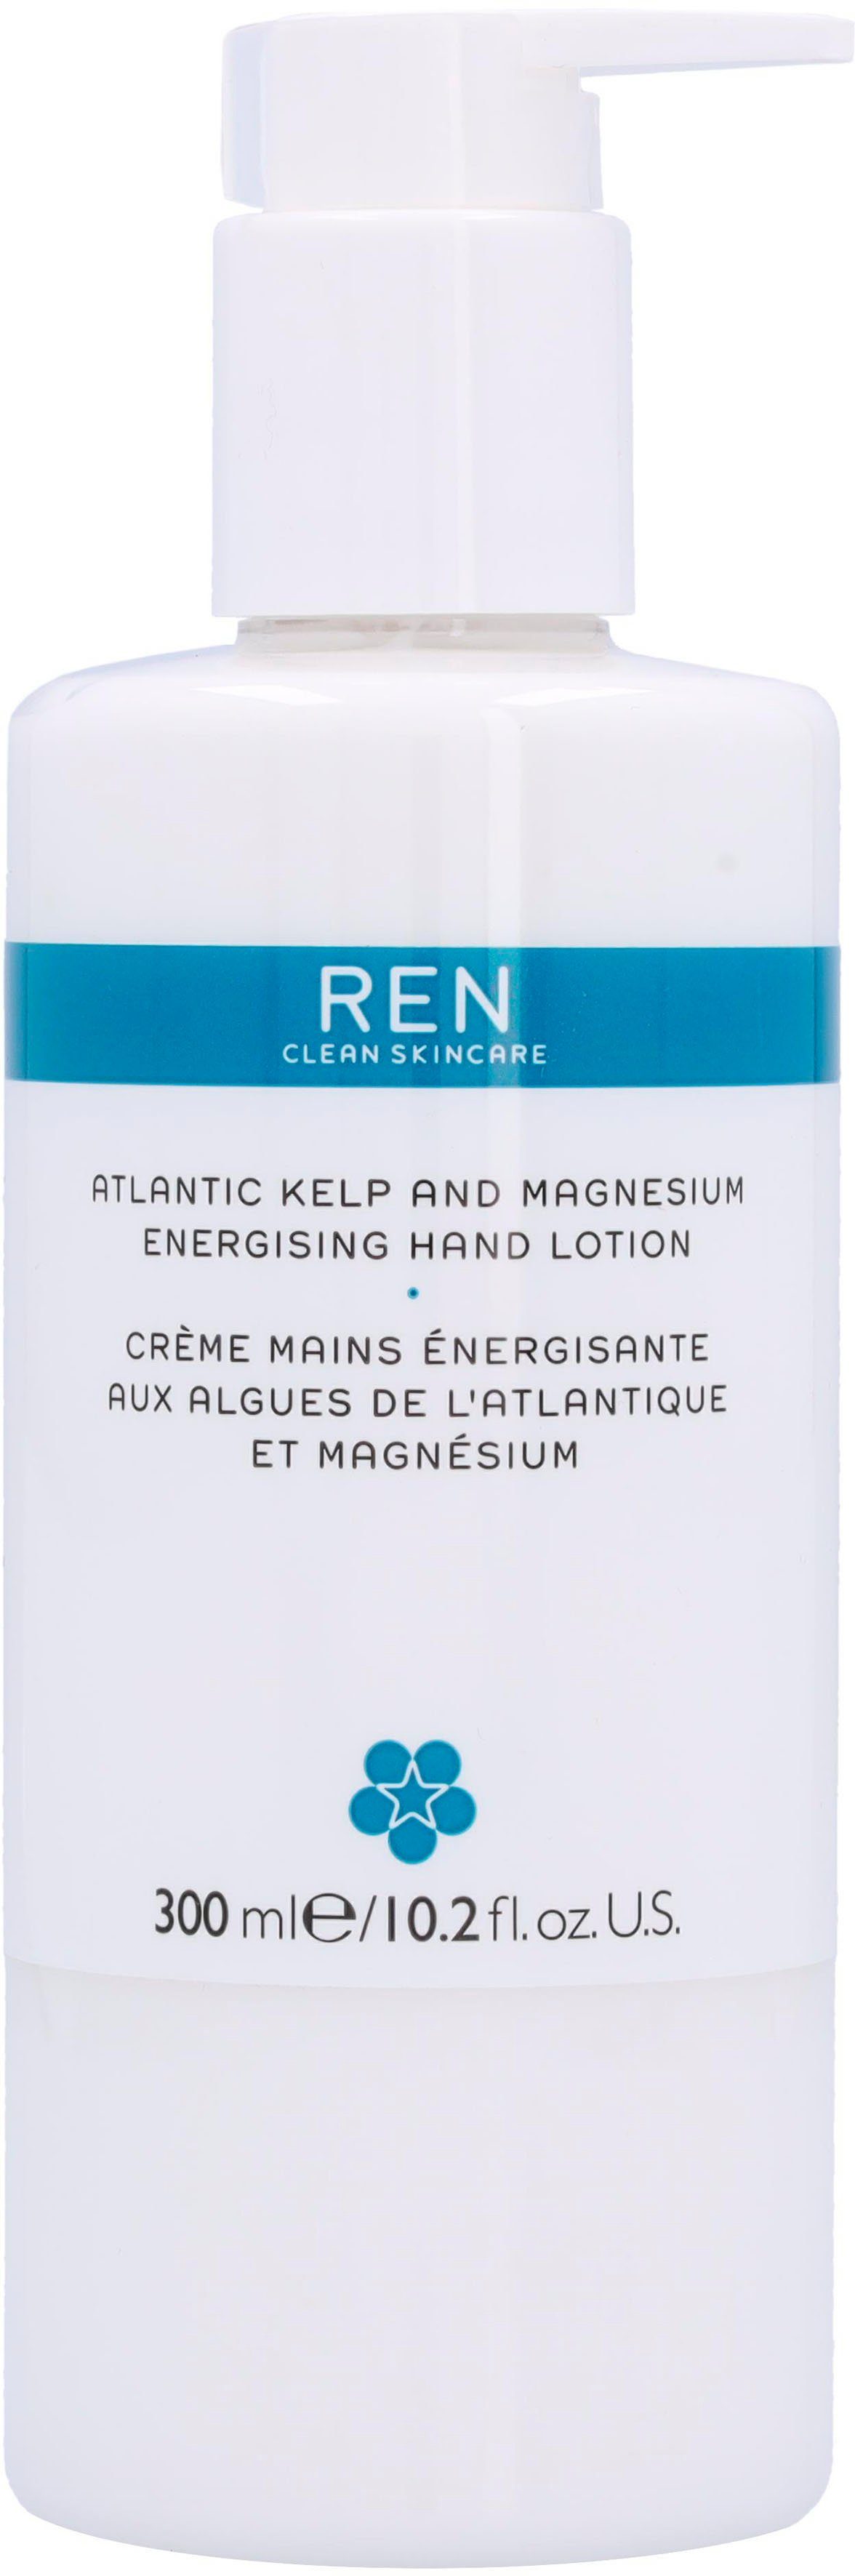 REN Clean Skincare Ren Handlotion Atlantic Kelp And Magnesium Energising Hand Lotion